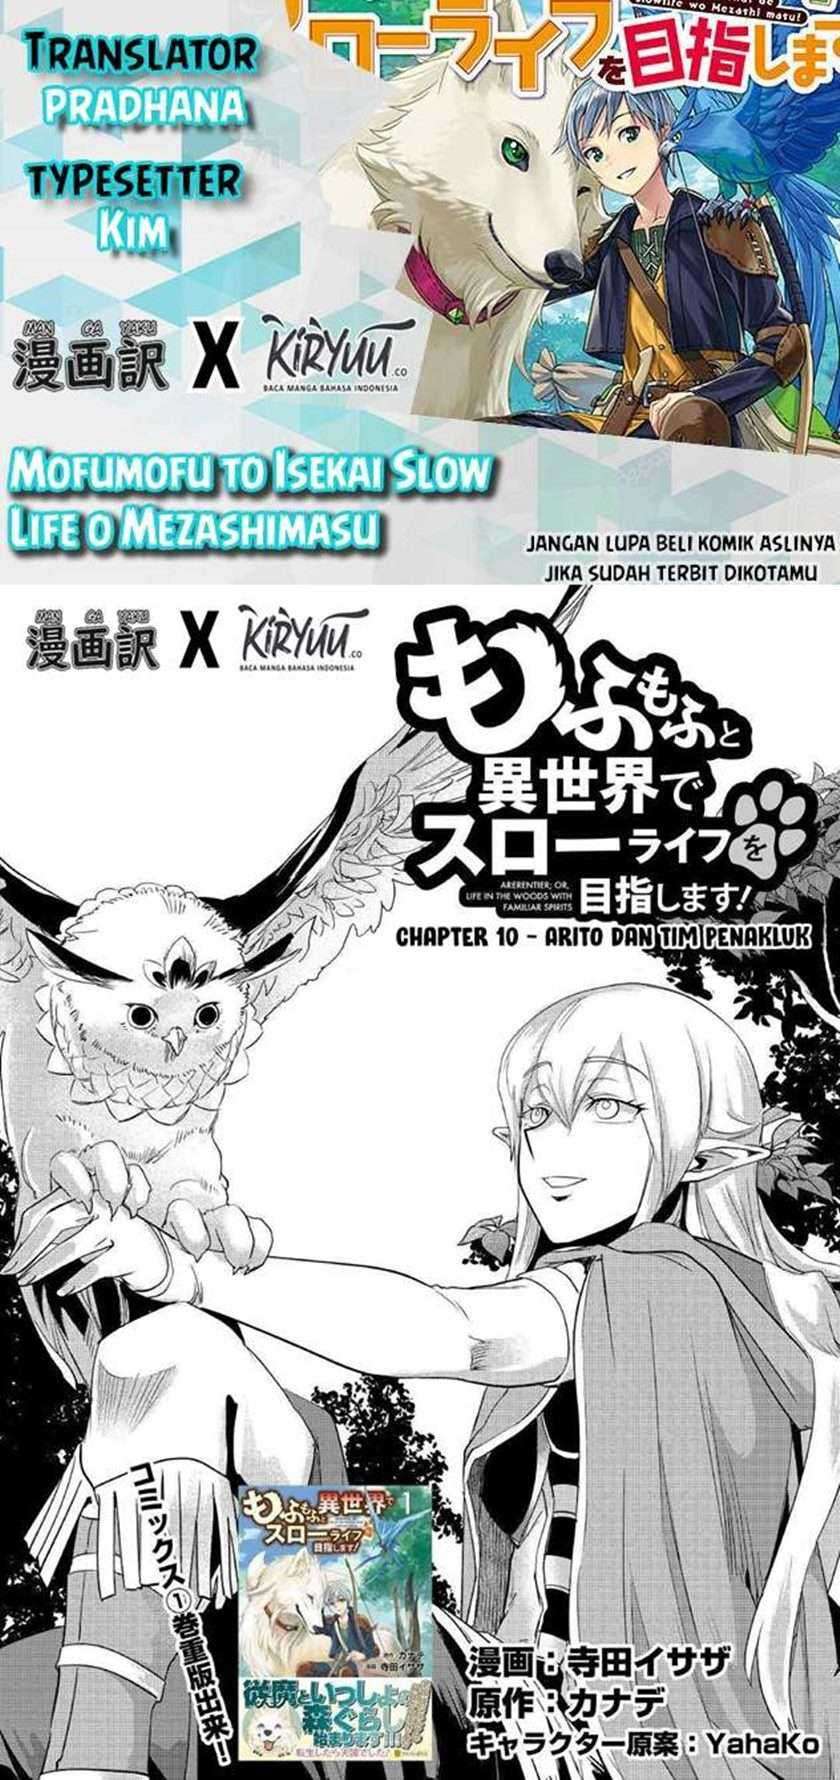 Mofumofu To Isekai Slow Life O Mezashimasu Chapter 10